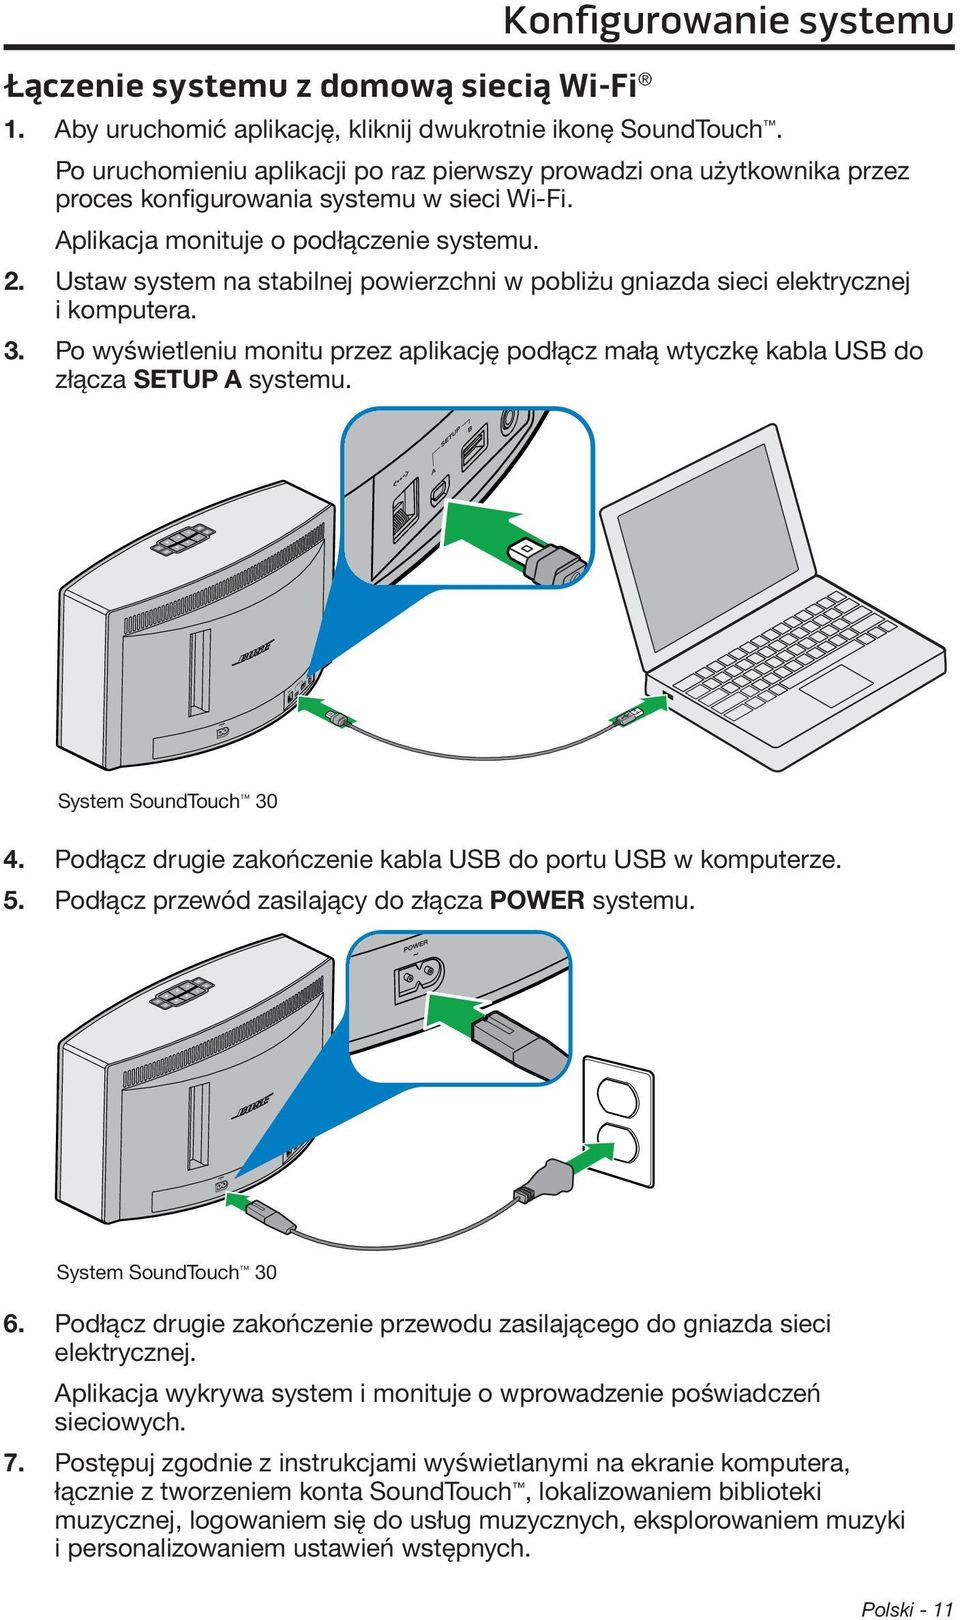 Ustaw system na stabilnej powierzchni w pobliżu gniazda sieci elektrycznej i komputera. 3. Po wyświetleniu monitu przez aplikację podłącz małą wtyczkę kabla USB do złącza SETUP A systemu.